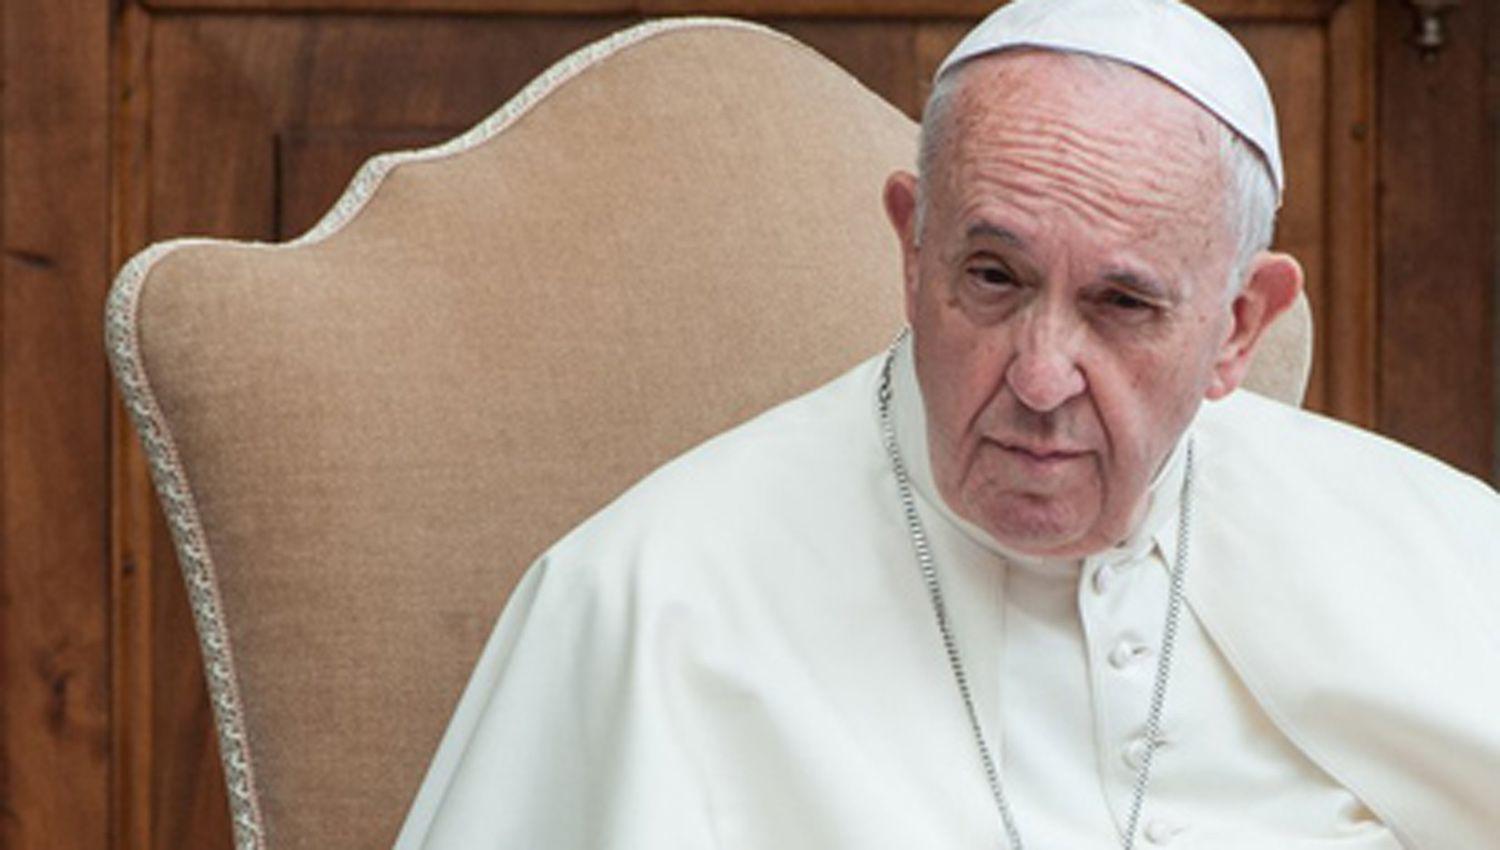 El papa Francisco volvioacute a sufrir un ataque de ciaacutetica